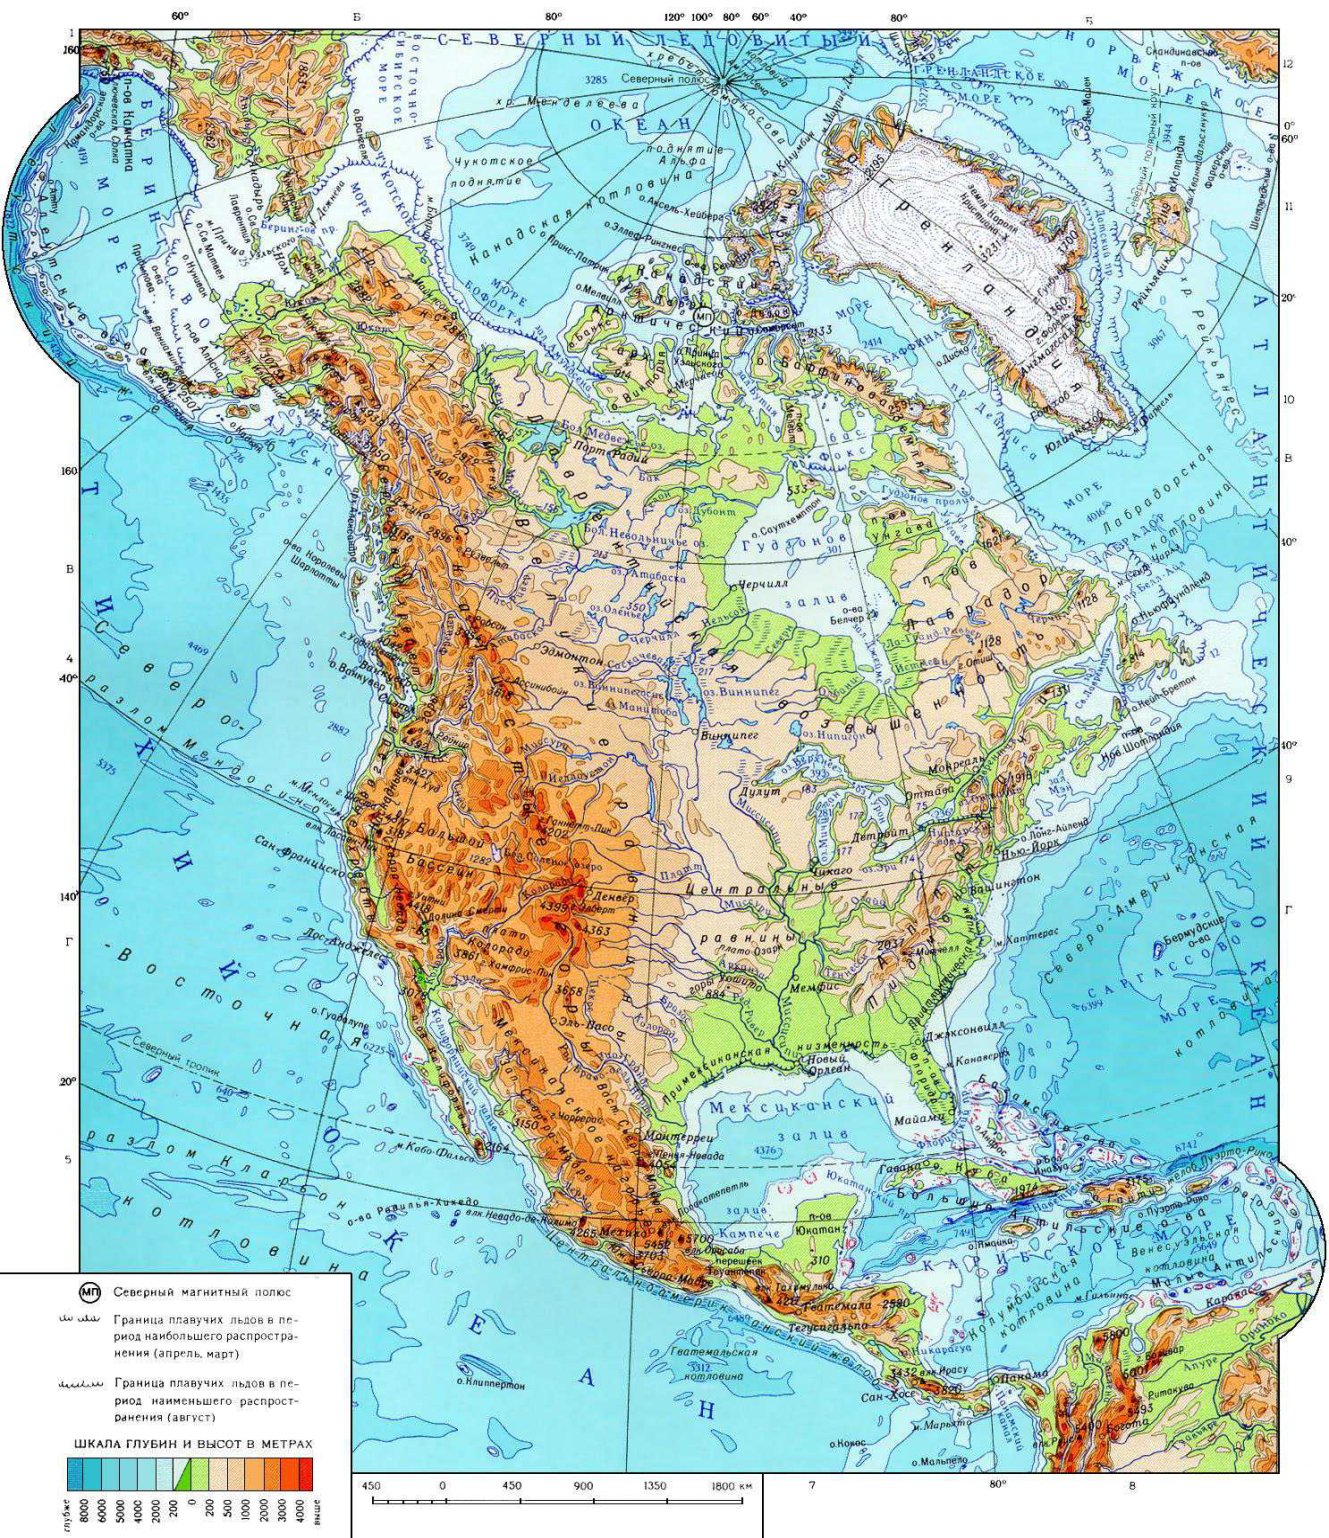 Урок по географии 11 класс на тему Мексика и Центральная Америка